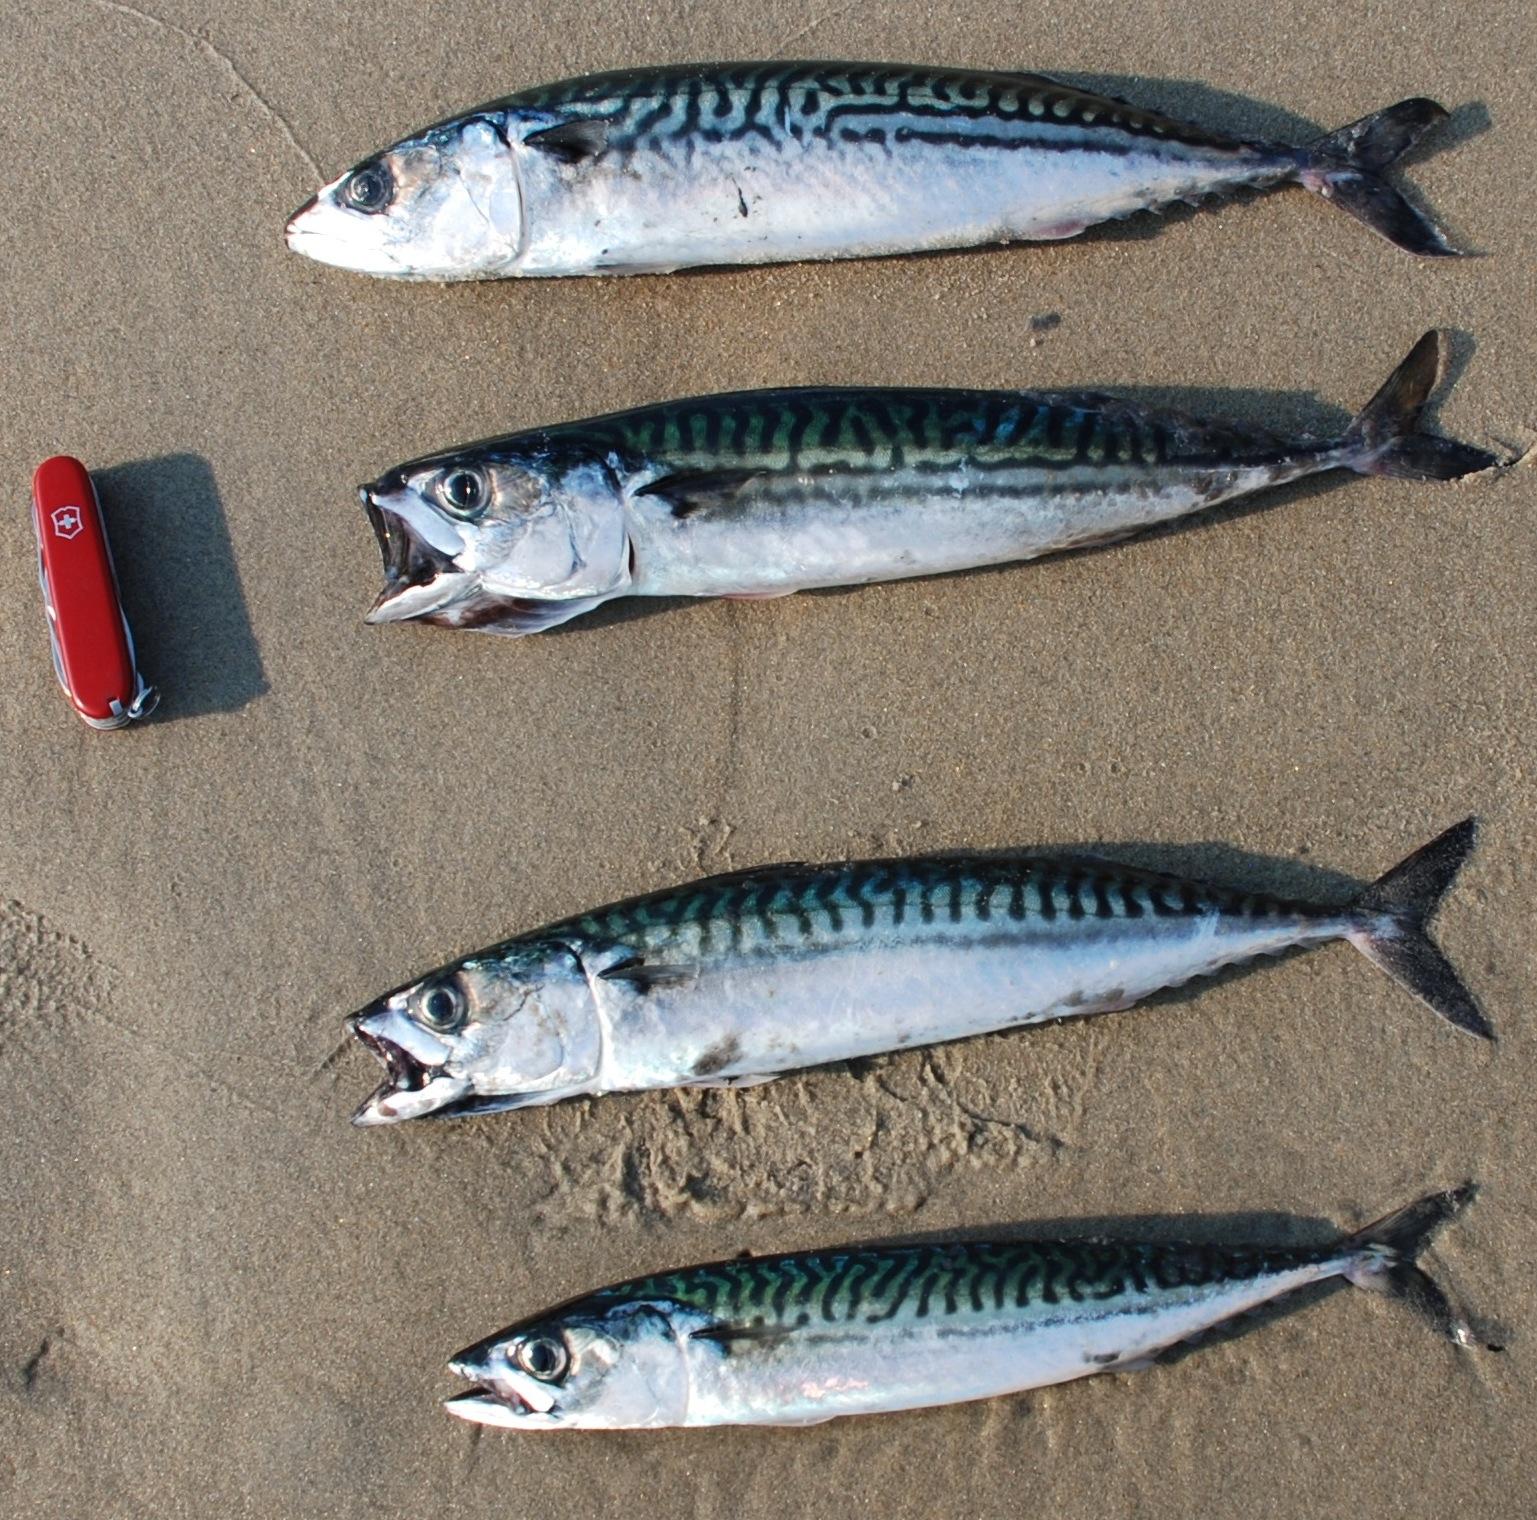 Fish of the week: Atlantic Mackerel Scomber Scombrus